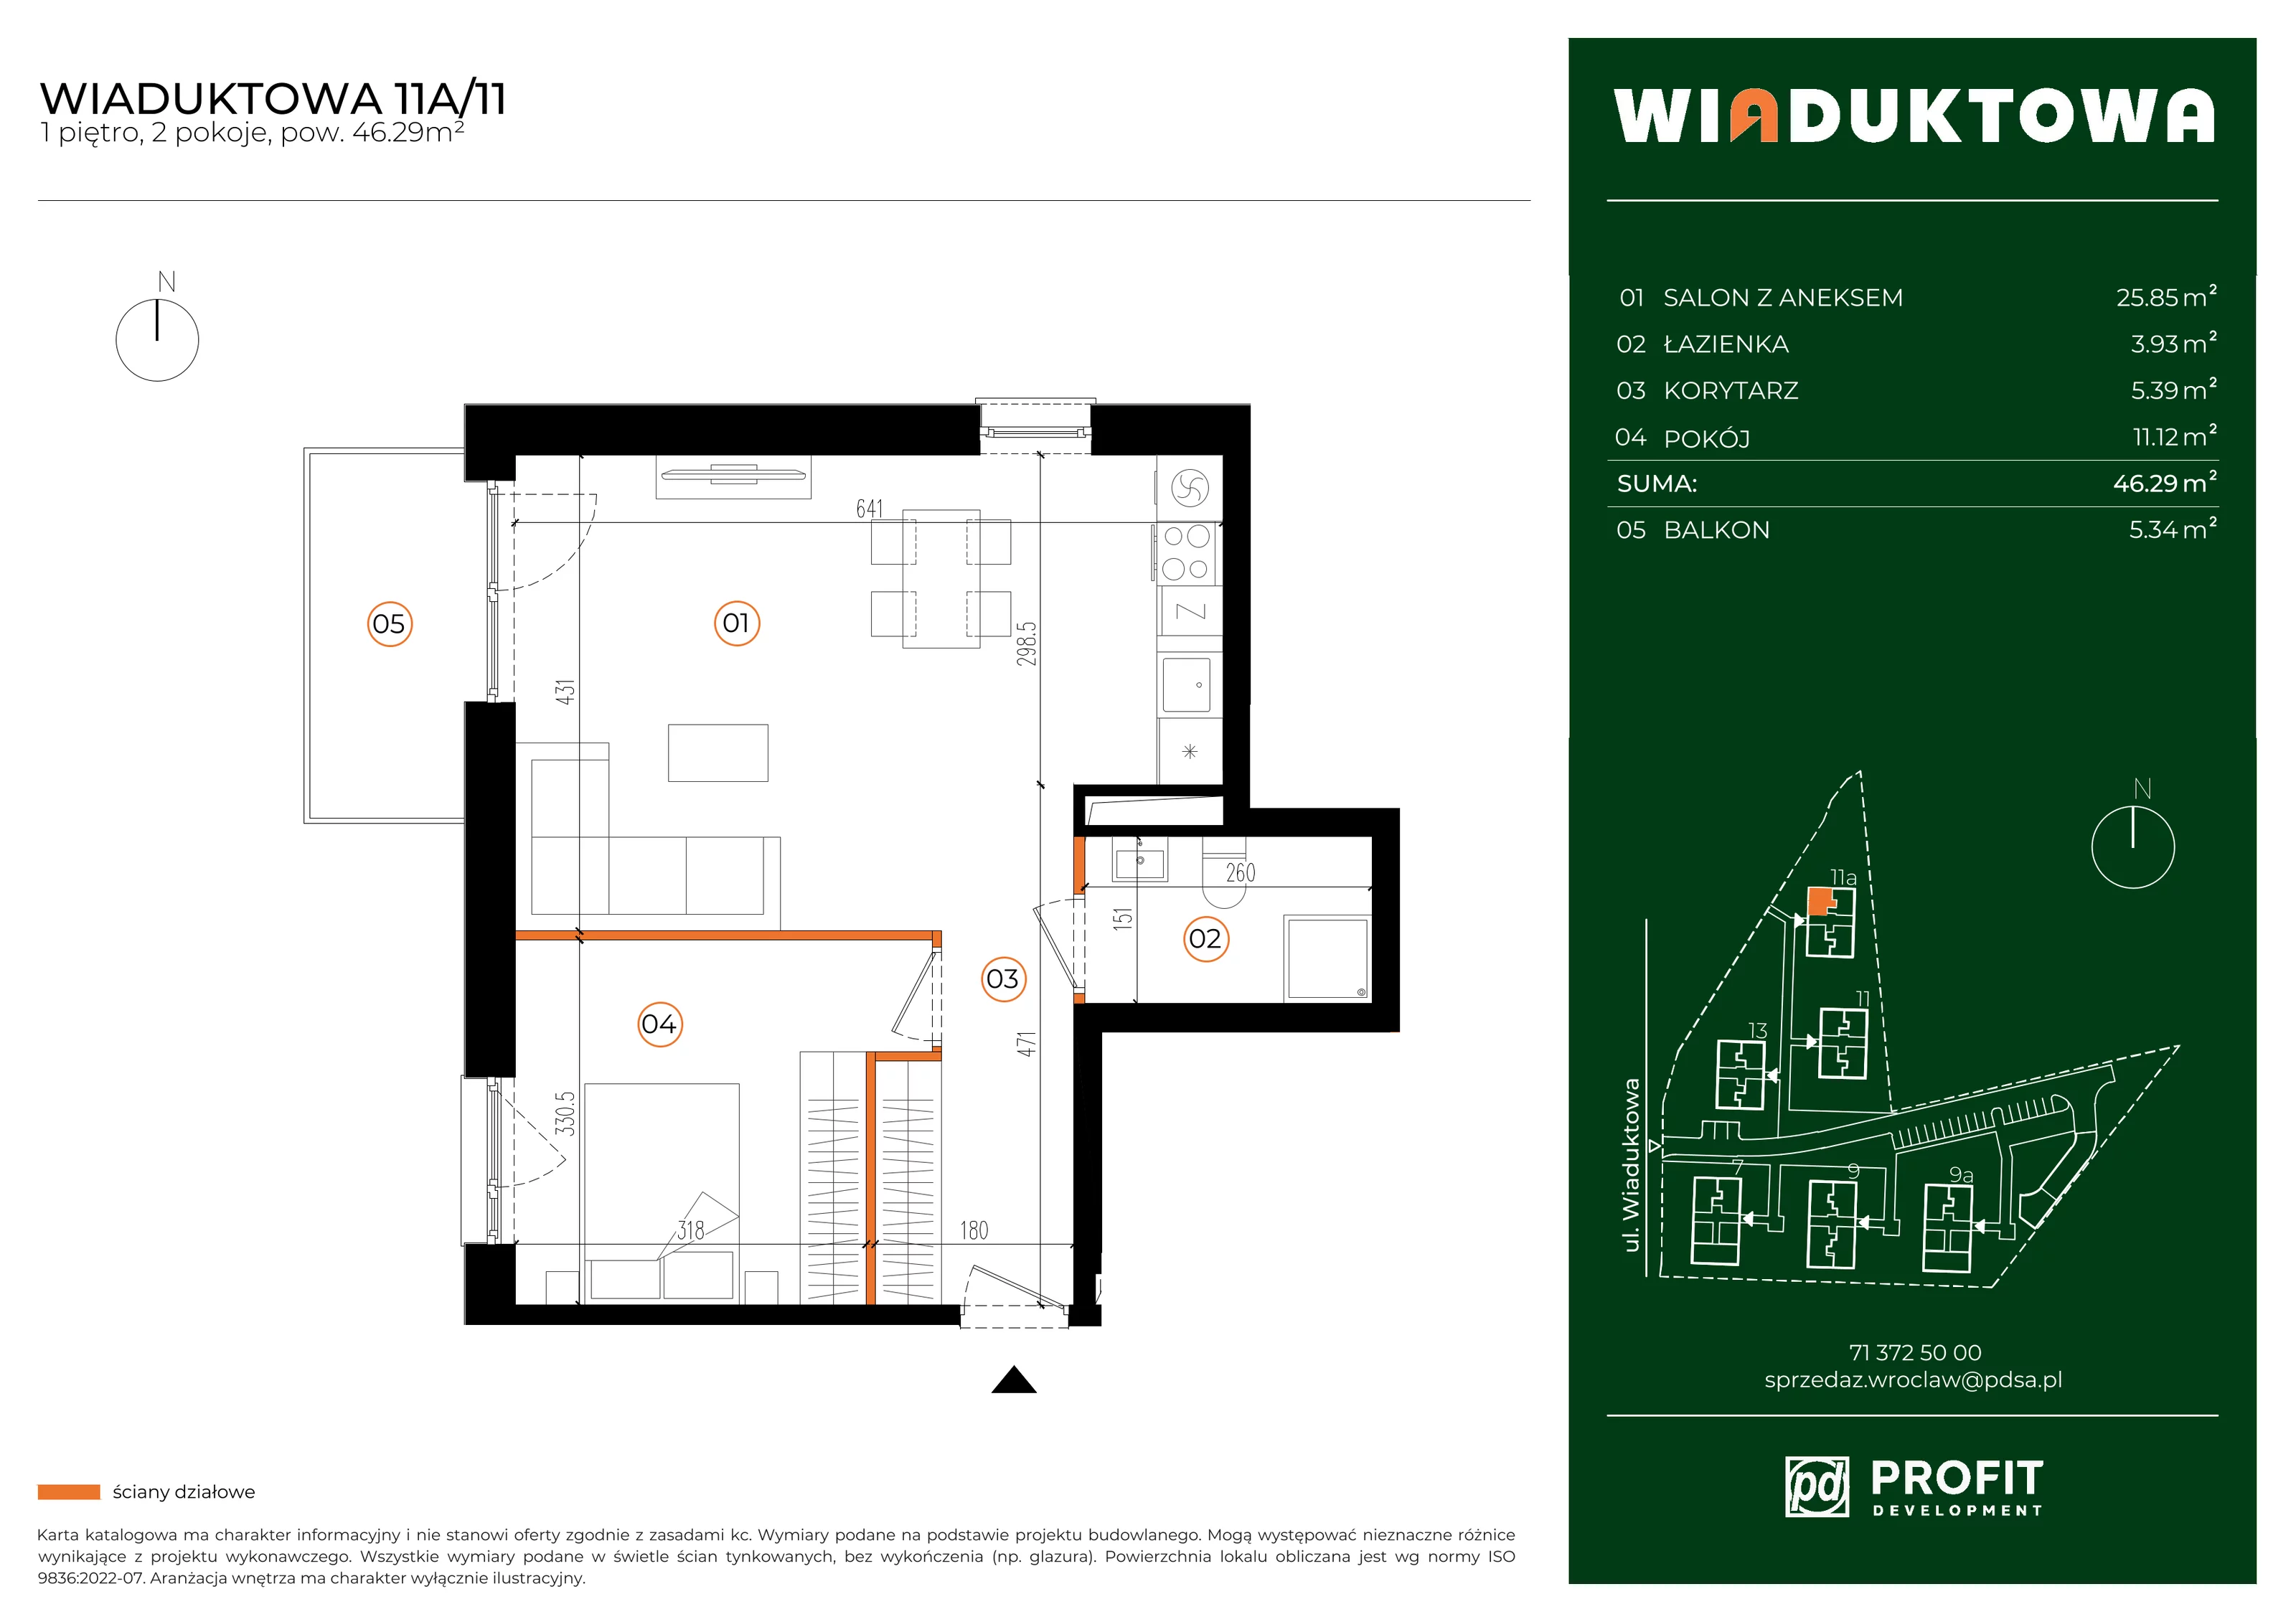 Mieszkanie 46,29 m², piętro 1, oferta nr WI/11A/11, Wiaduktowa, Wrocław, Krzyki-Partynice, Krzyki, ul. Wiaduktowa